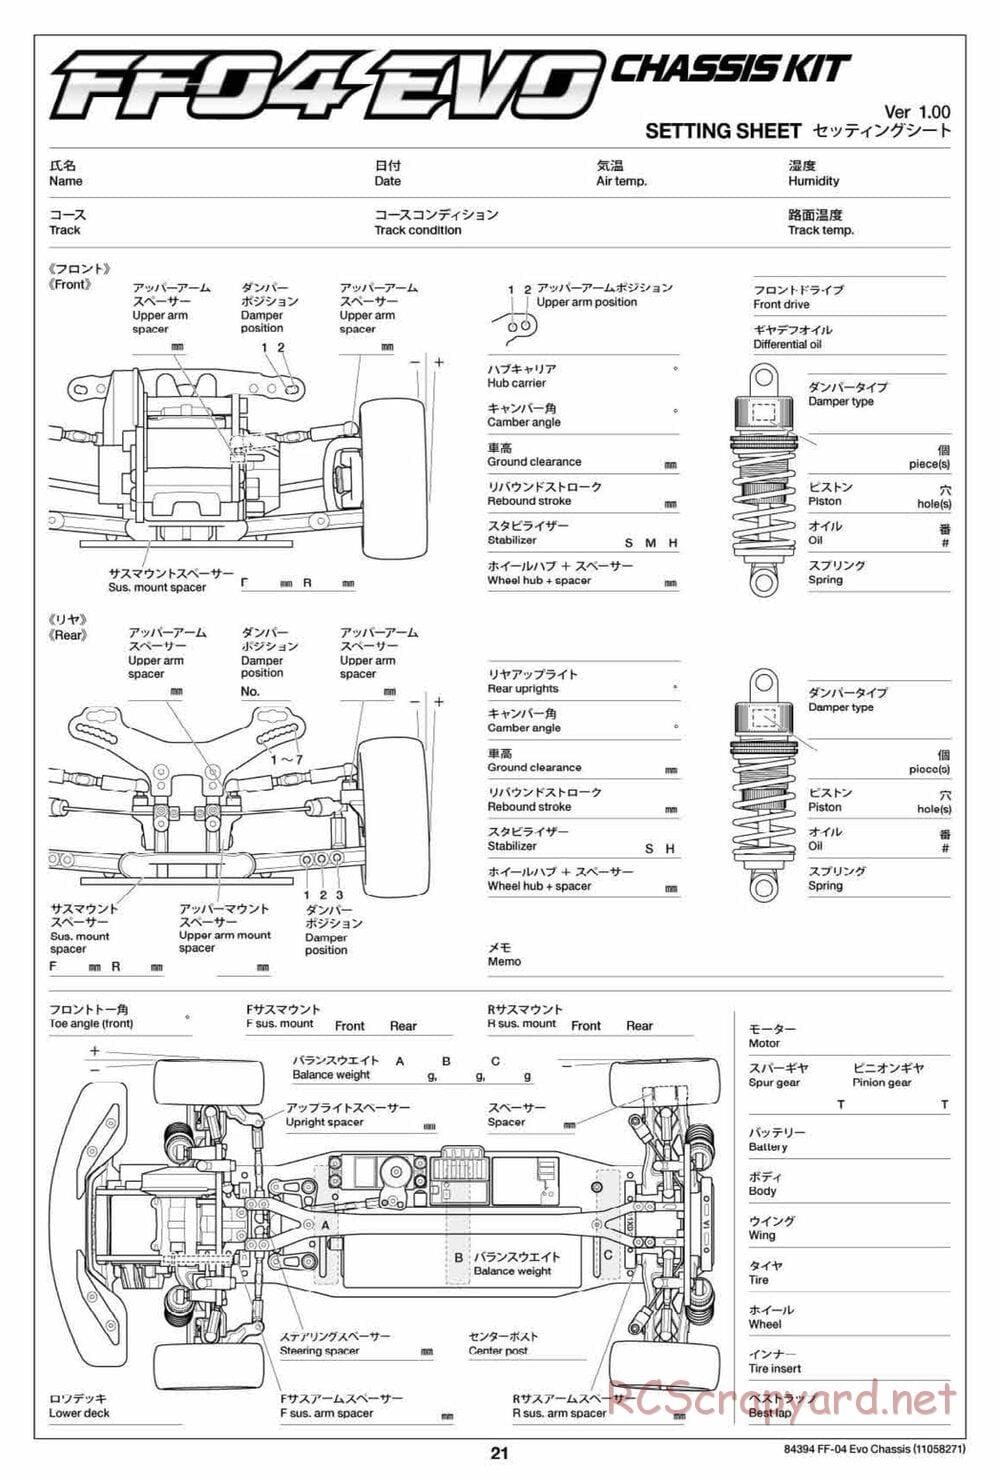 Tamiya - FF-04 Evo Chassis - Manual - Page 21